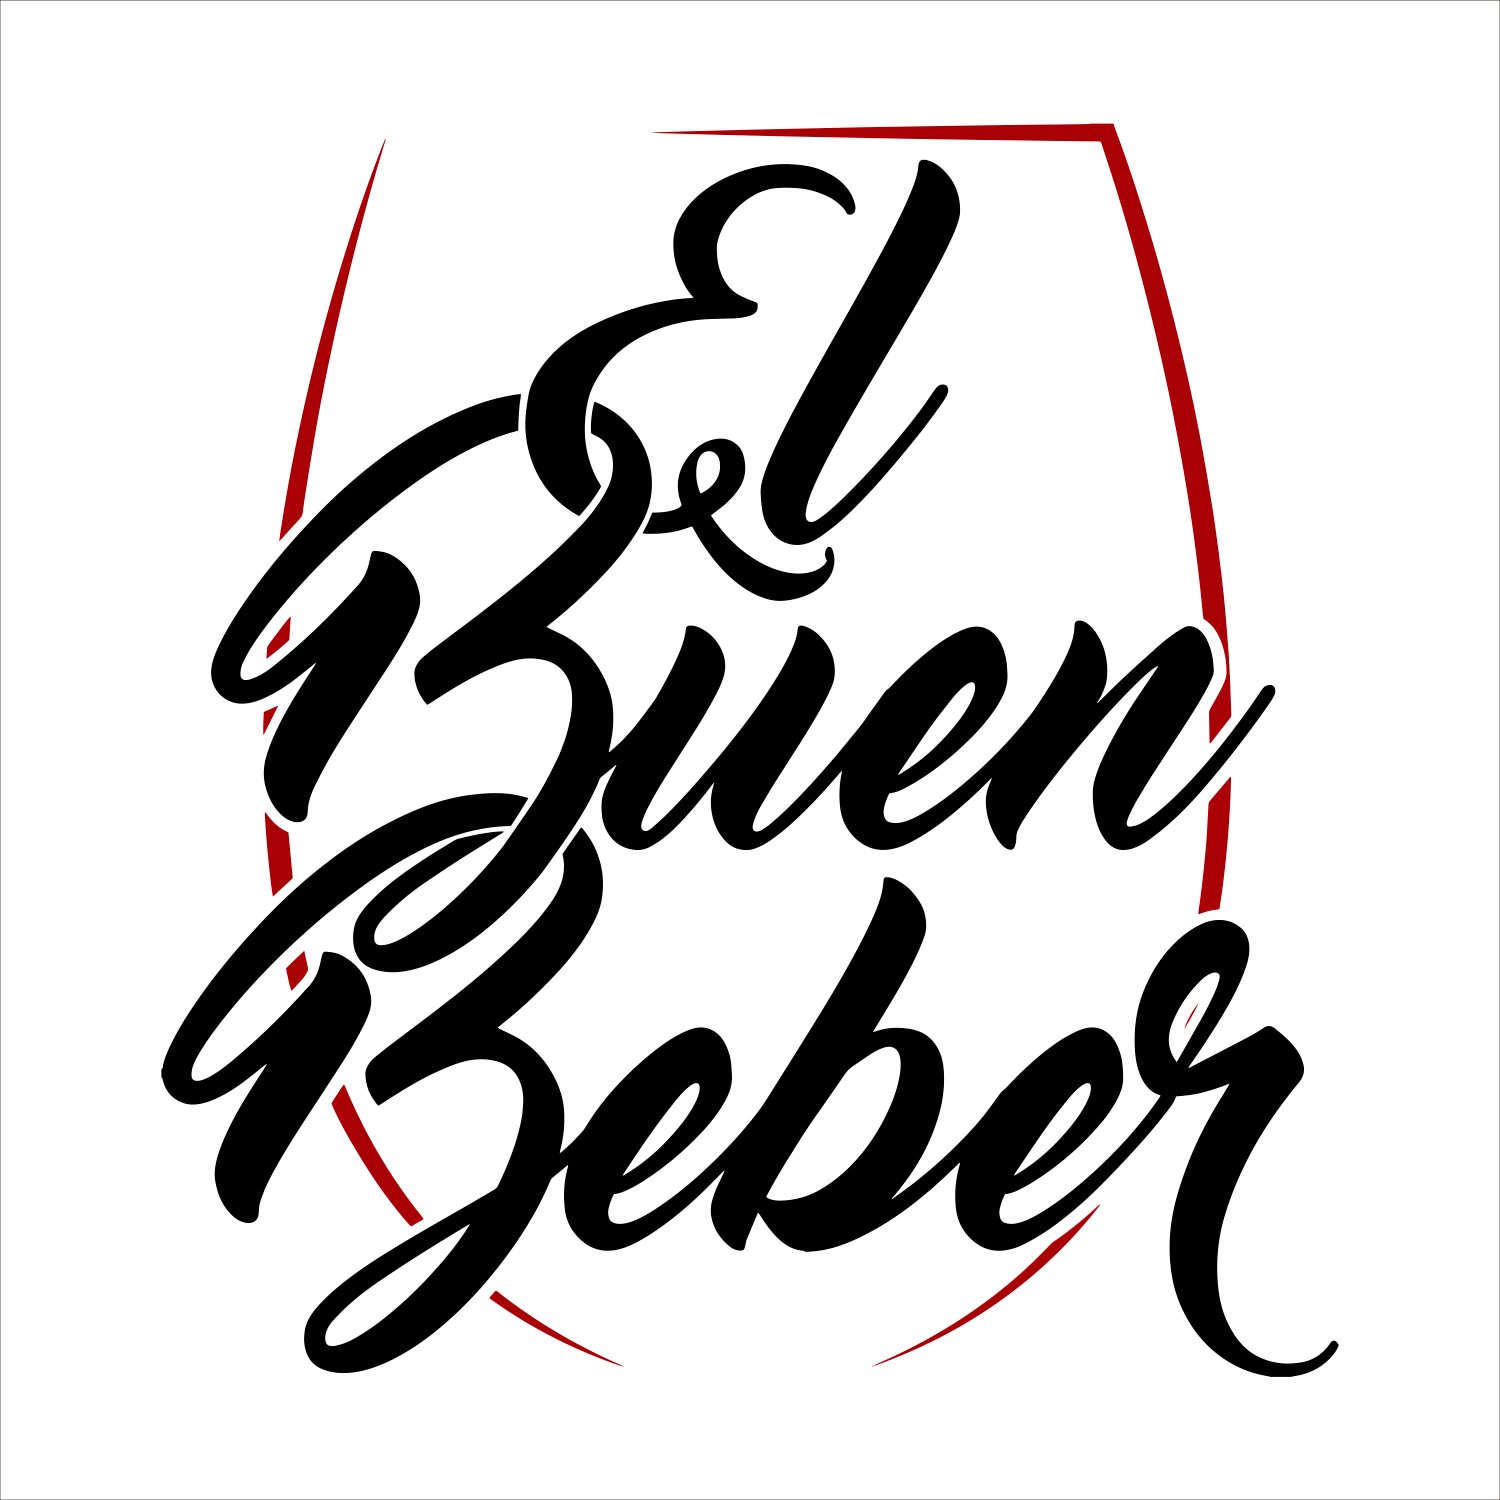 #etiquetaspersonalizadas para 🍷🍾🍺🍫
Clases de coctelería y catas de vino.
Experiencias sobre el buen beber y comer!
#ElBuenBeber